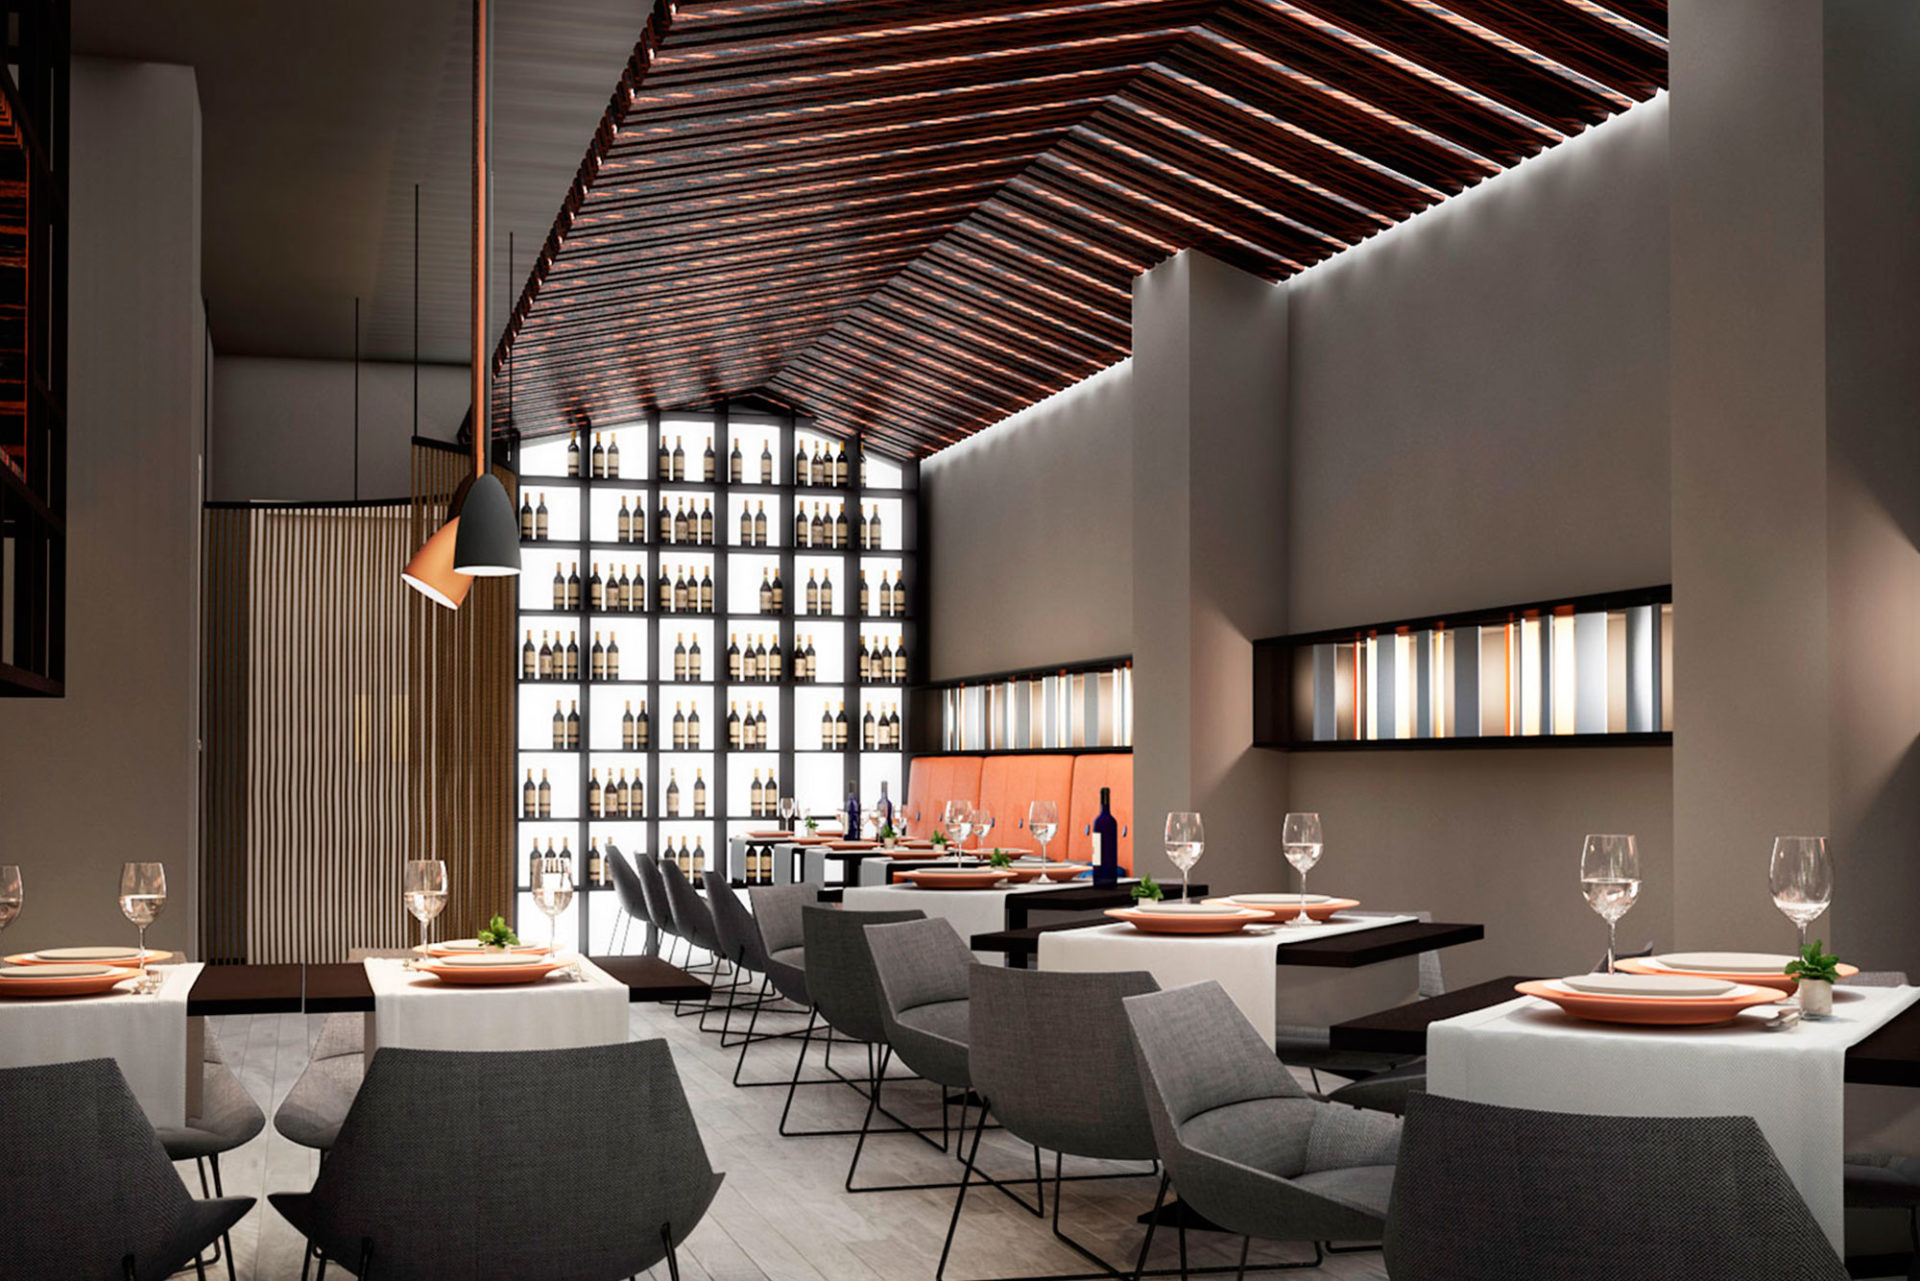 interiorismo comercial restaurante en Valencia infografia render 3d detalle celosia techo con retroiluminación